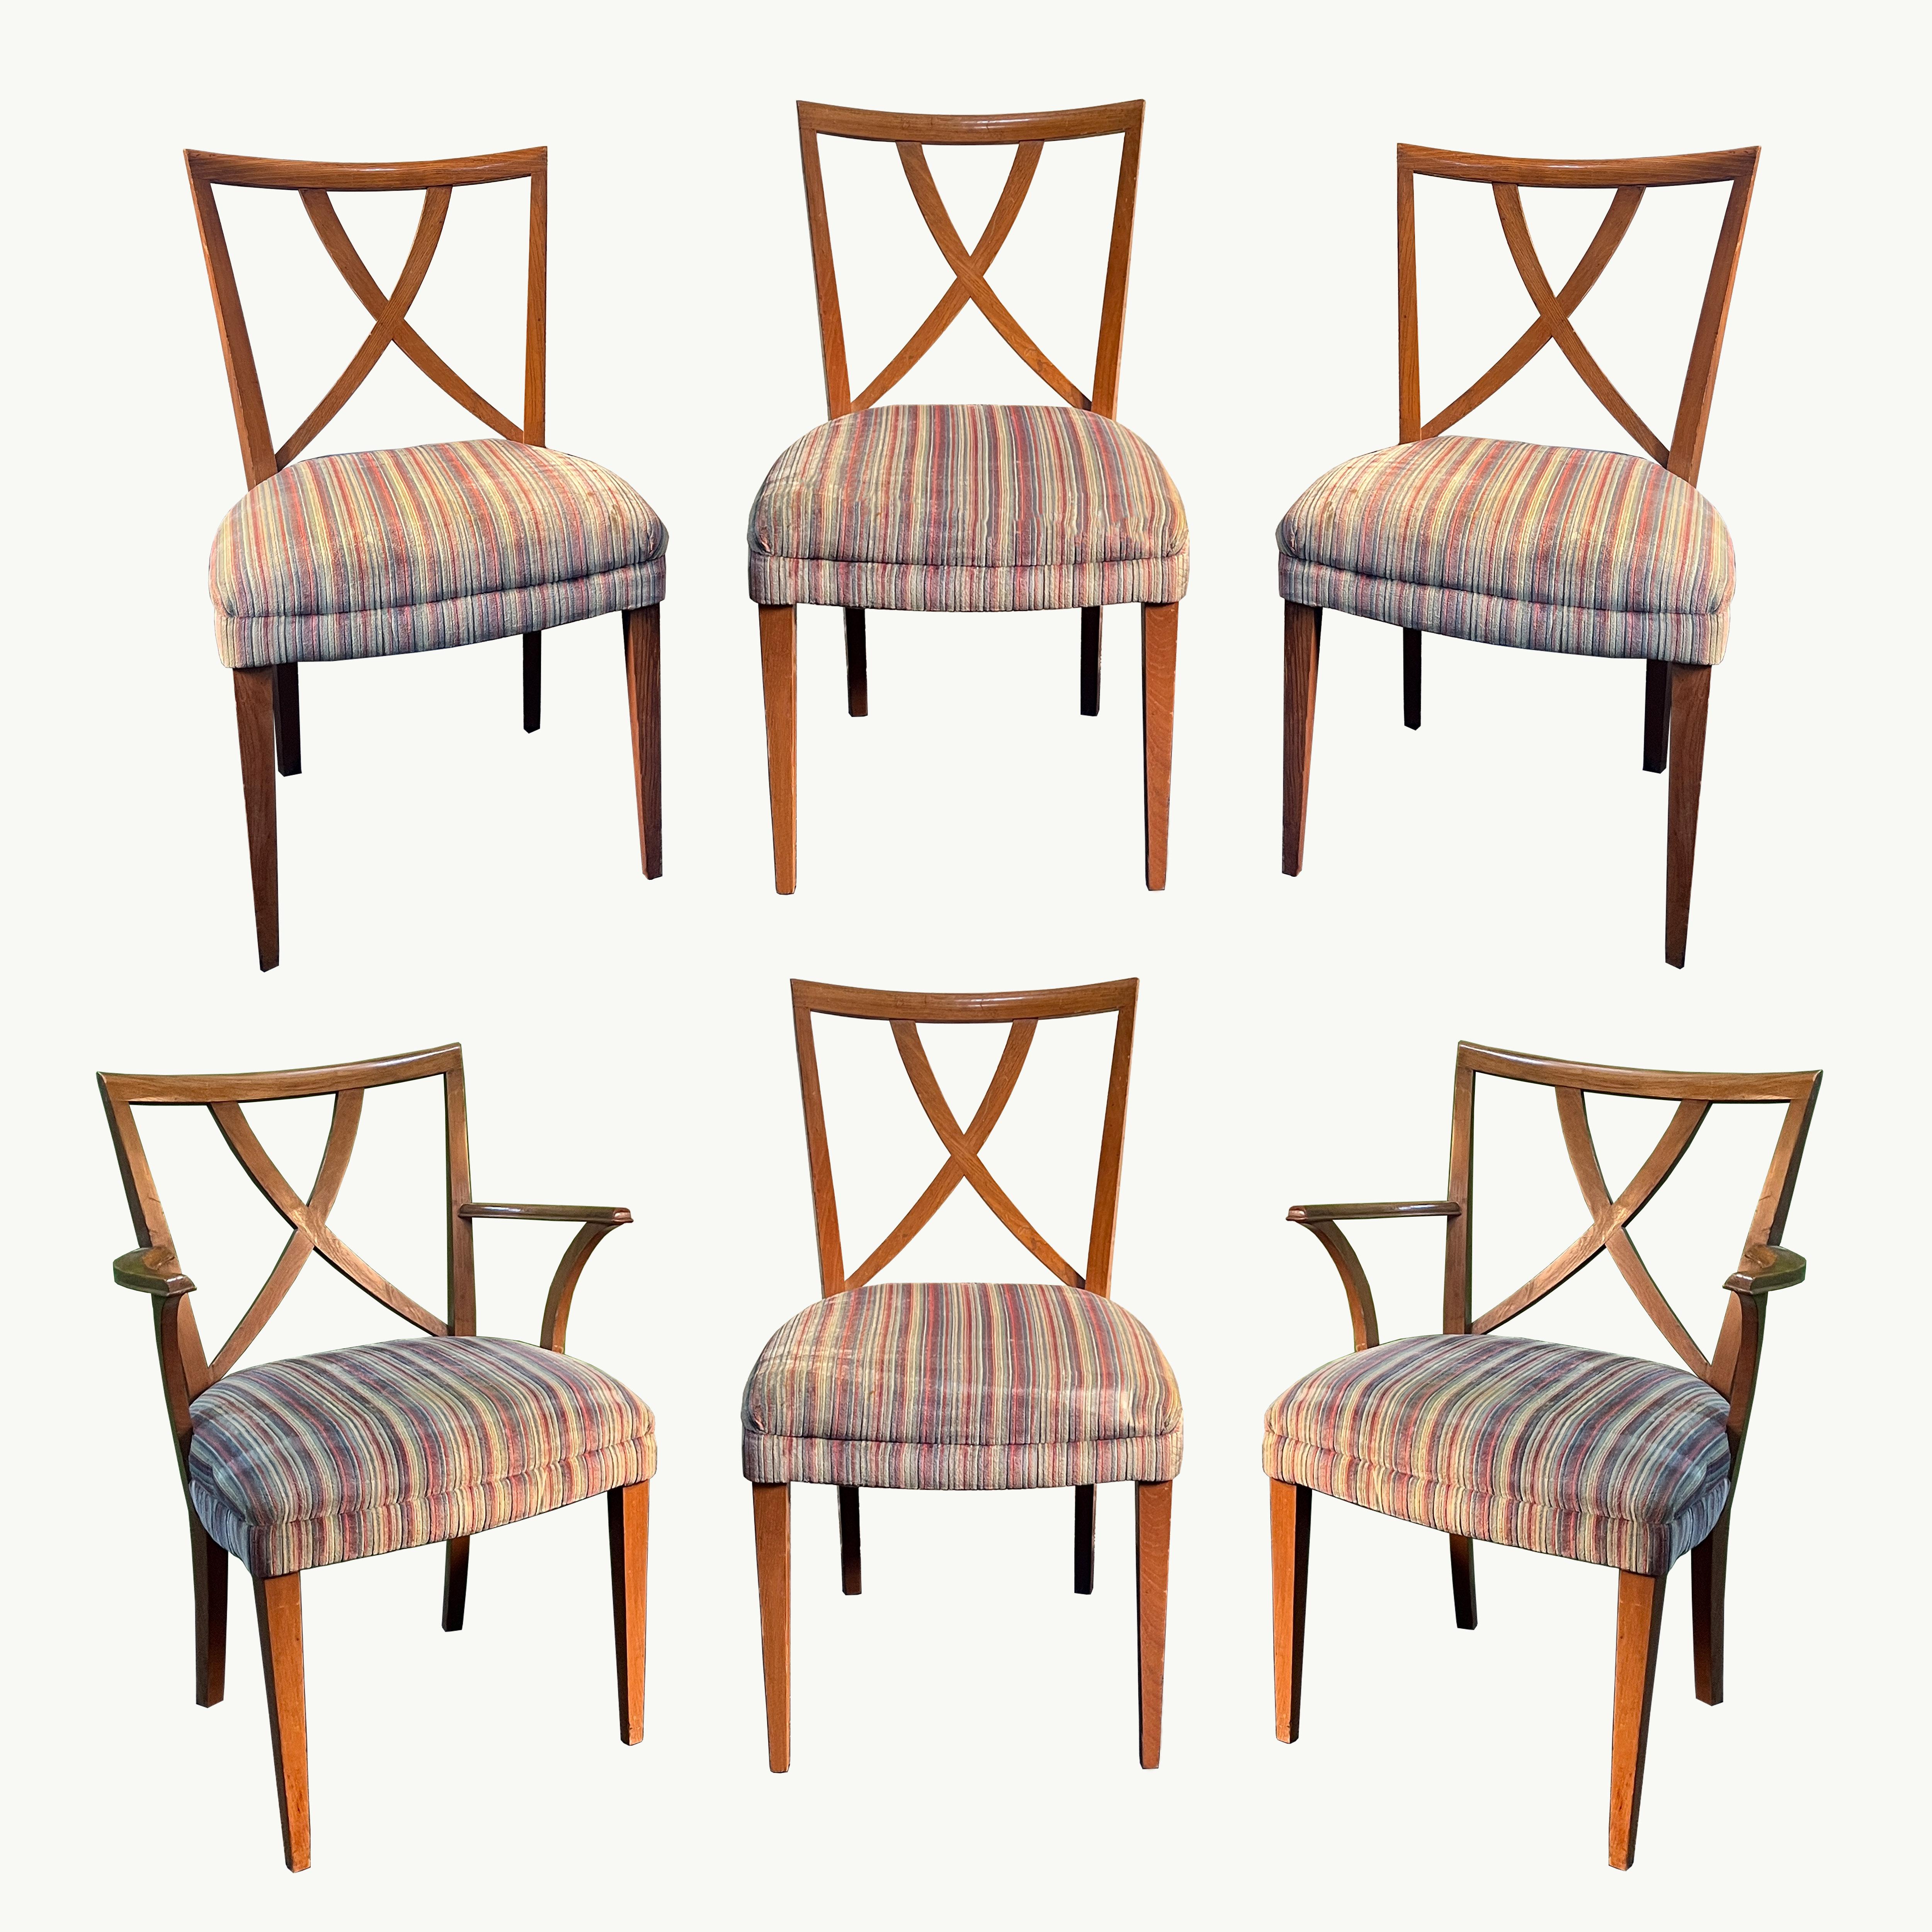 Magnifique ensemble de 6 chaises de salle à manger Paul Frankl à dossier en X, rembourrées, avec châssis en chêne, années 1950. Cet ensemble comprend 2 chaises de capitaine et 4 chaises d'appoint. 